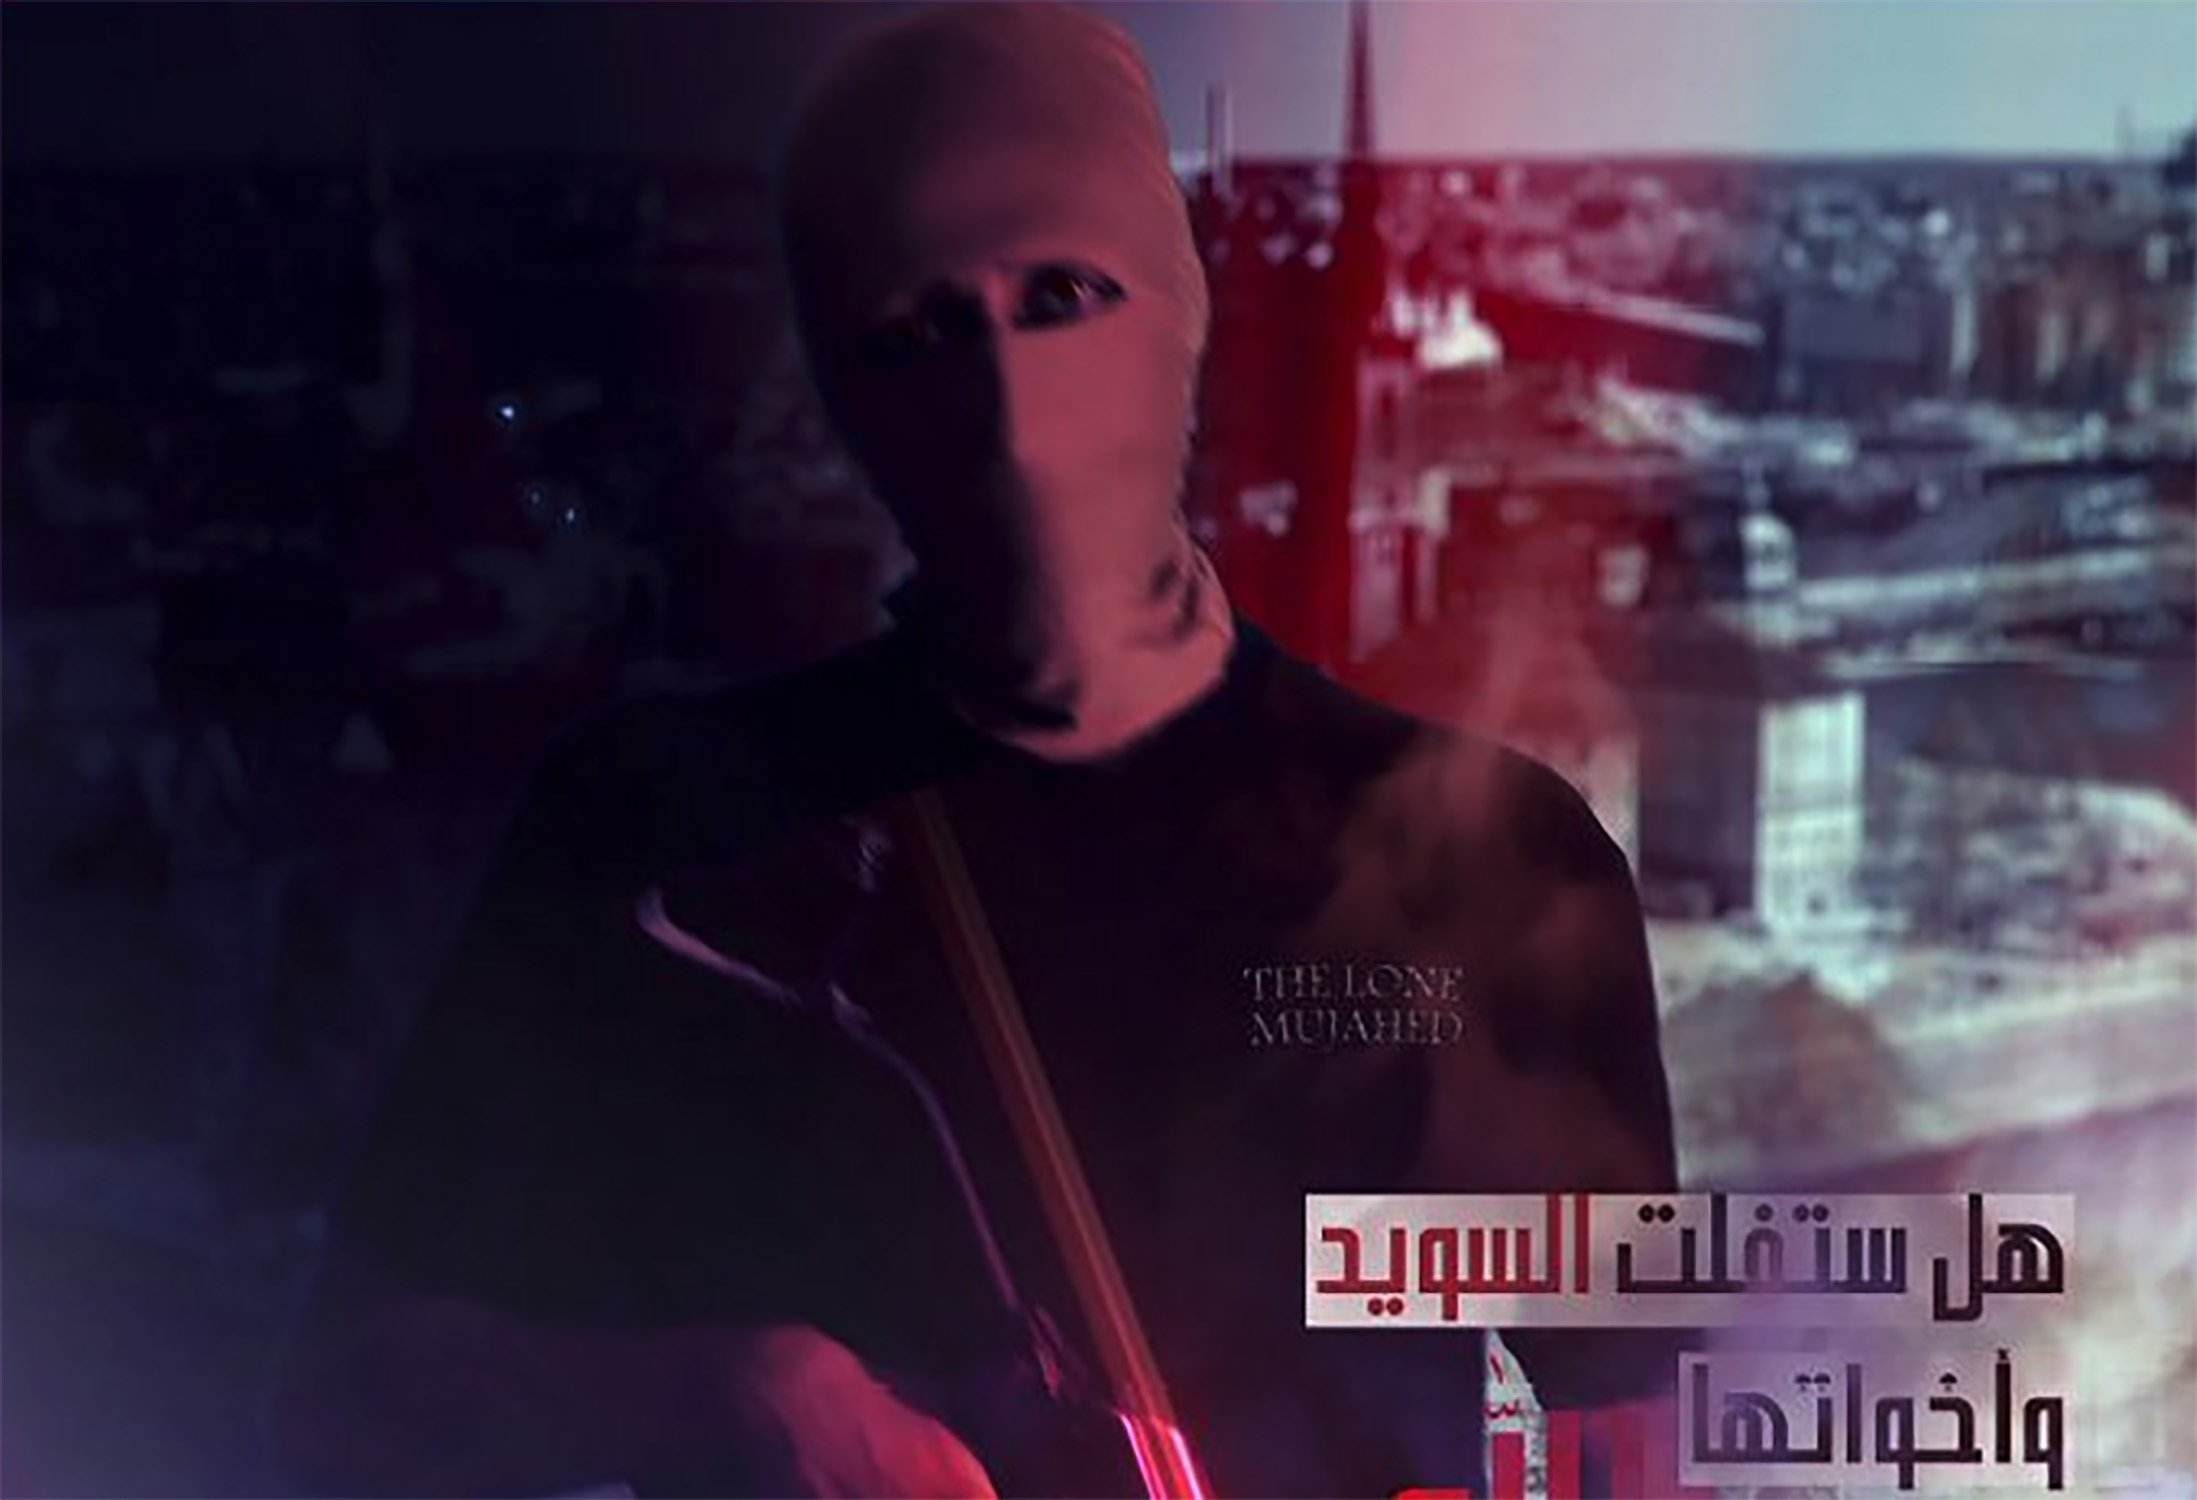 Al-Qaeda pone Francia y Suecia entre sus objetivos de ataques terroristas